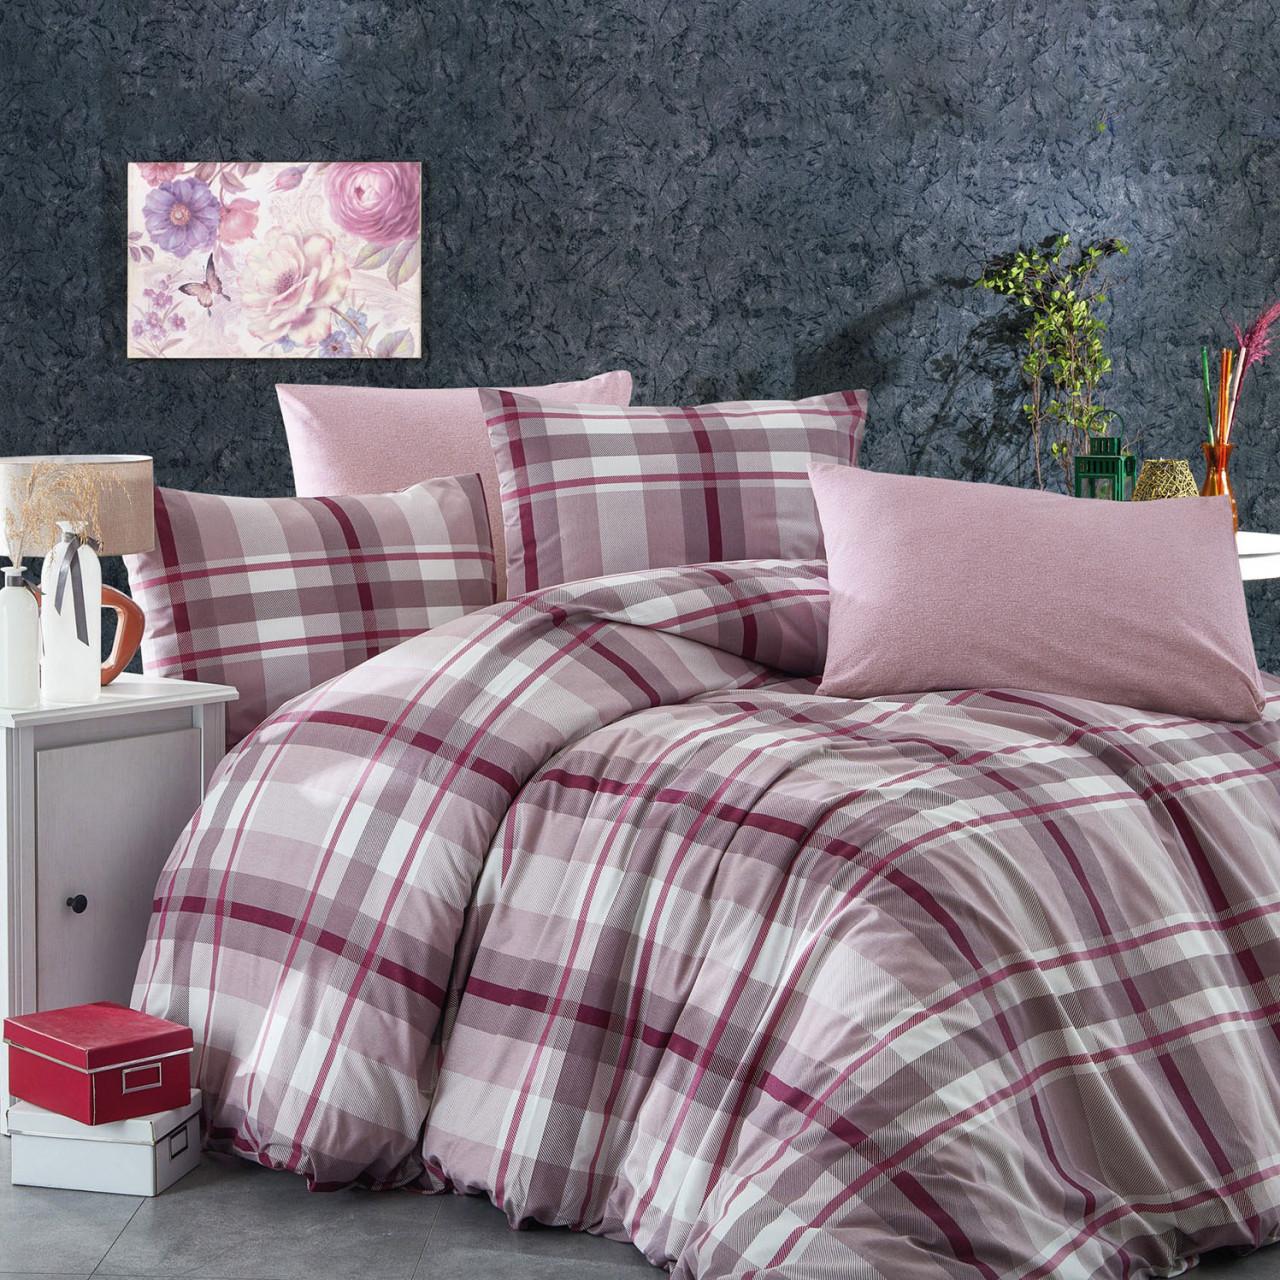 Selected image for Mille Notti Plaid Red Pamučna posteljina za bračni ležaj, 200x220 cm, Roze